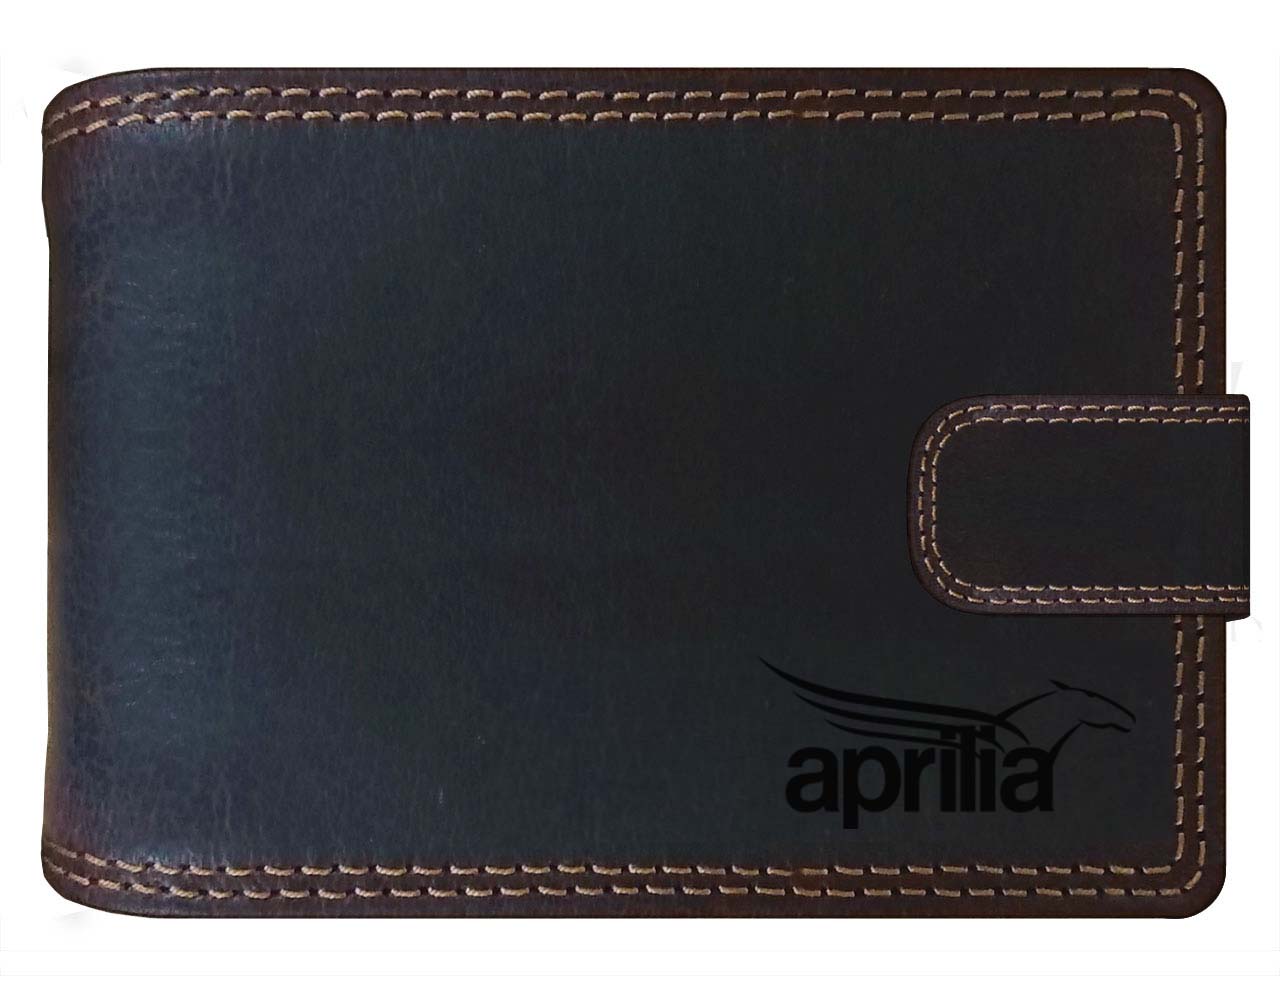 APRILIA - kožená peněženka hnědá RFID